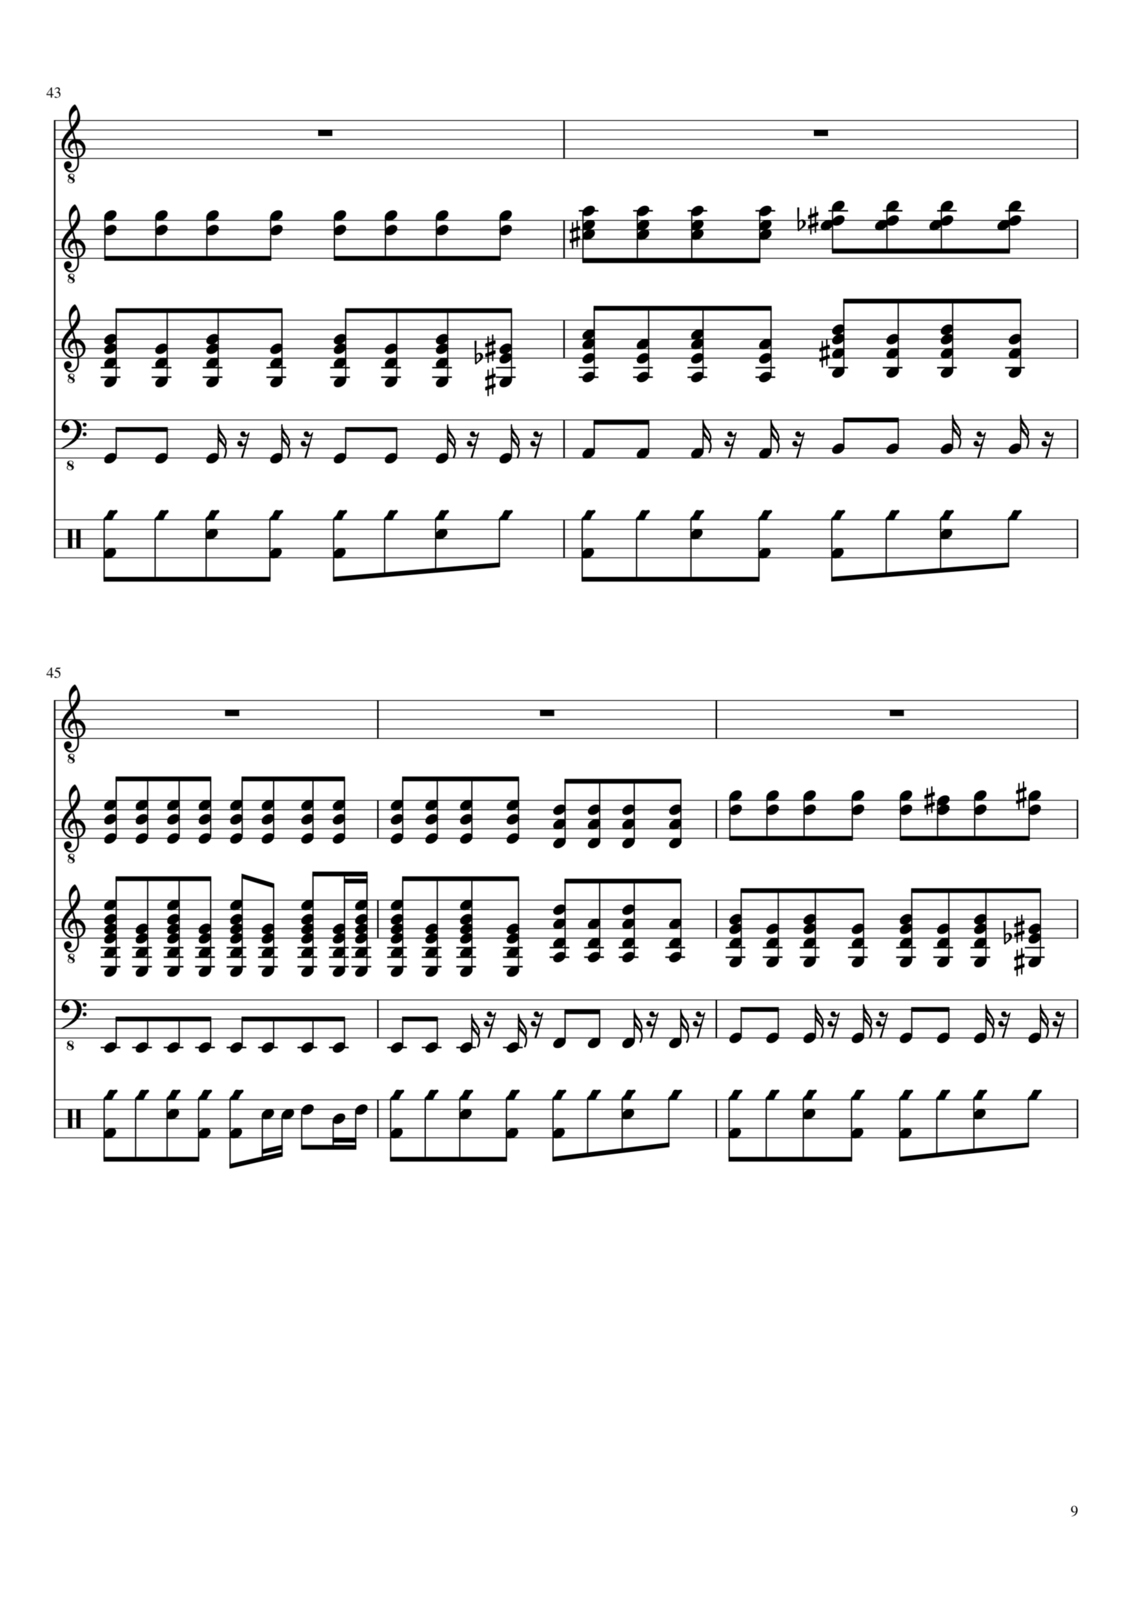 Vechnaya molodost slide, Image 9